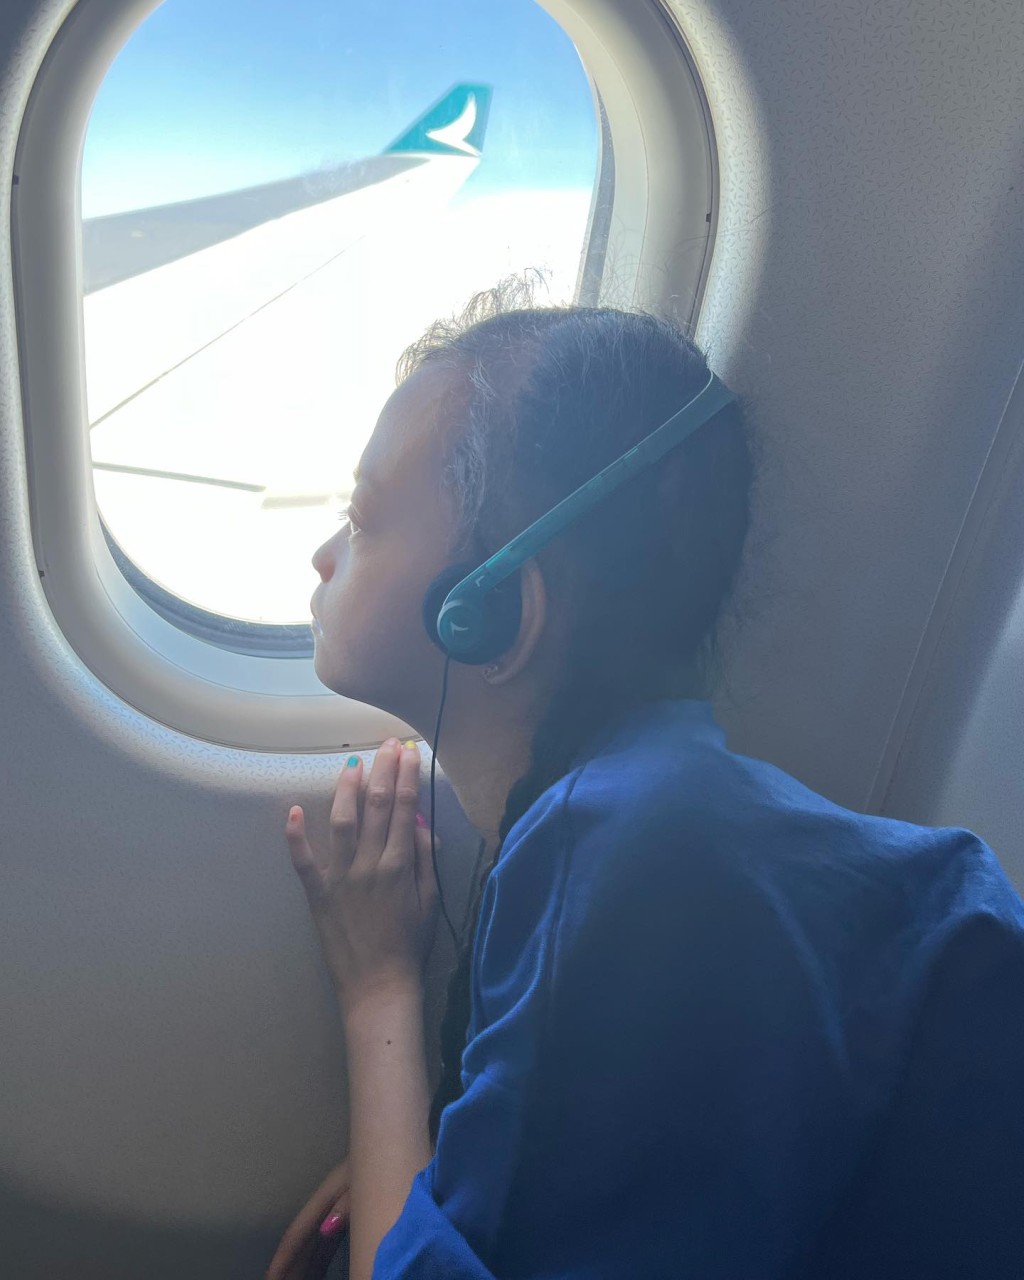 锺丽淇早前带大女首次搭飞机。